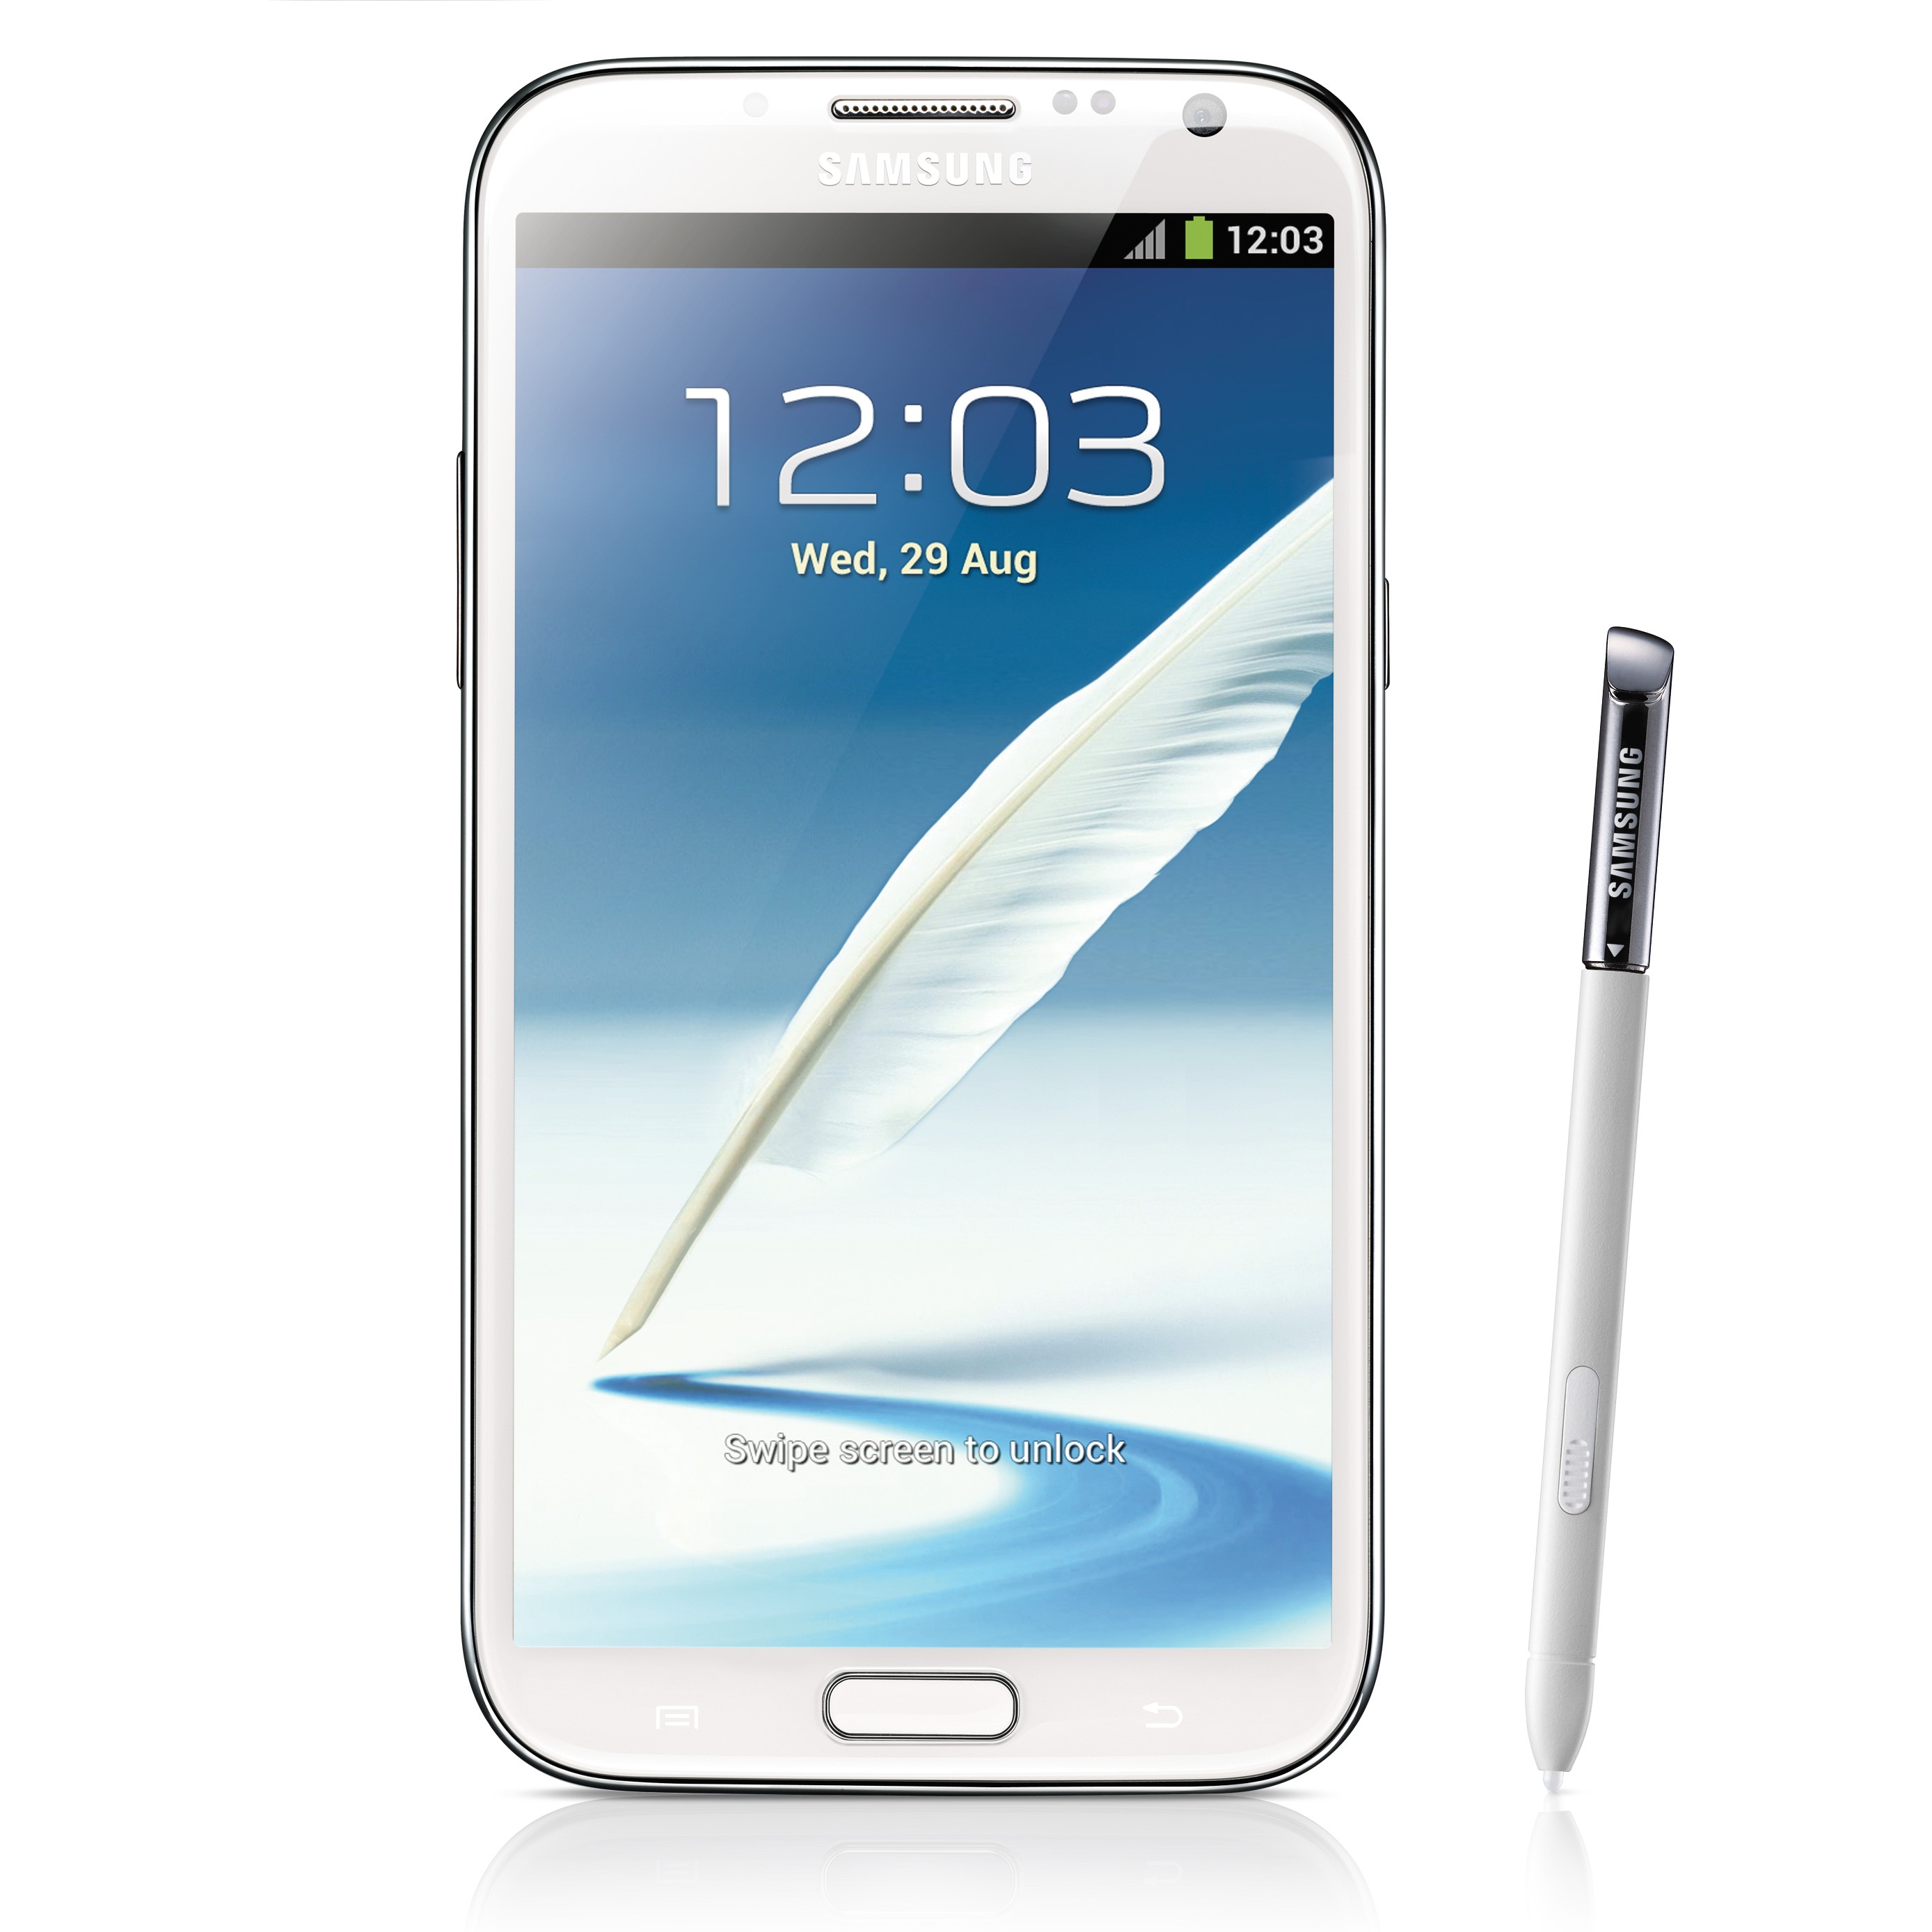 Samsung Galaxy Note II се появява за първи път на нашия пазар